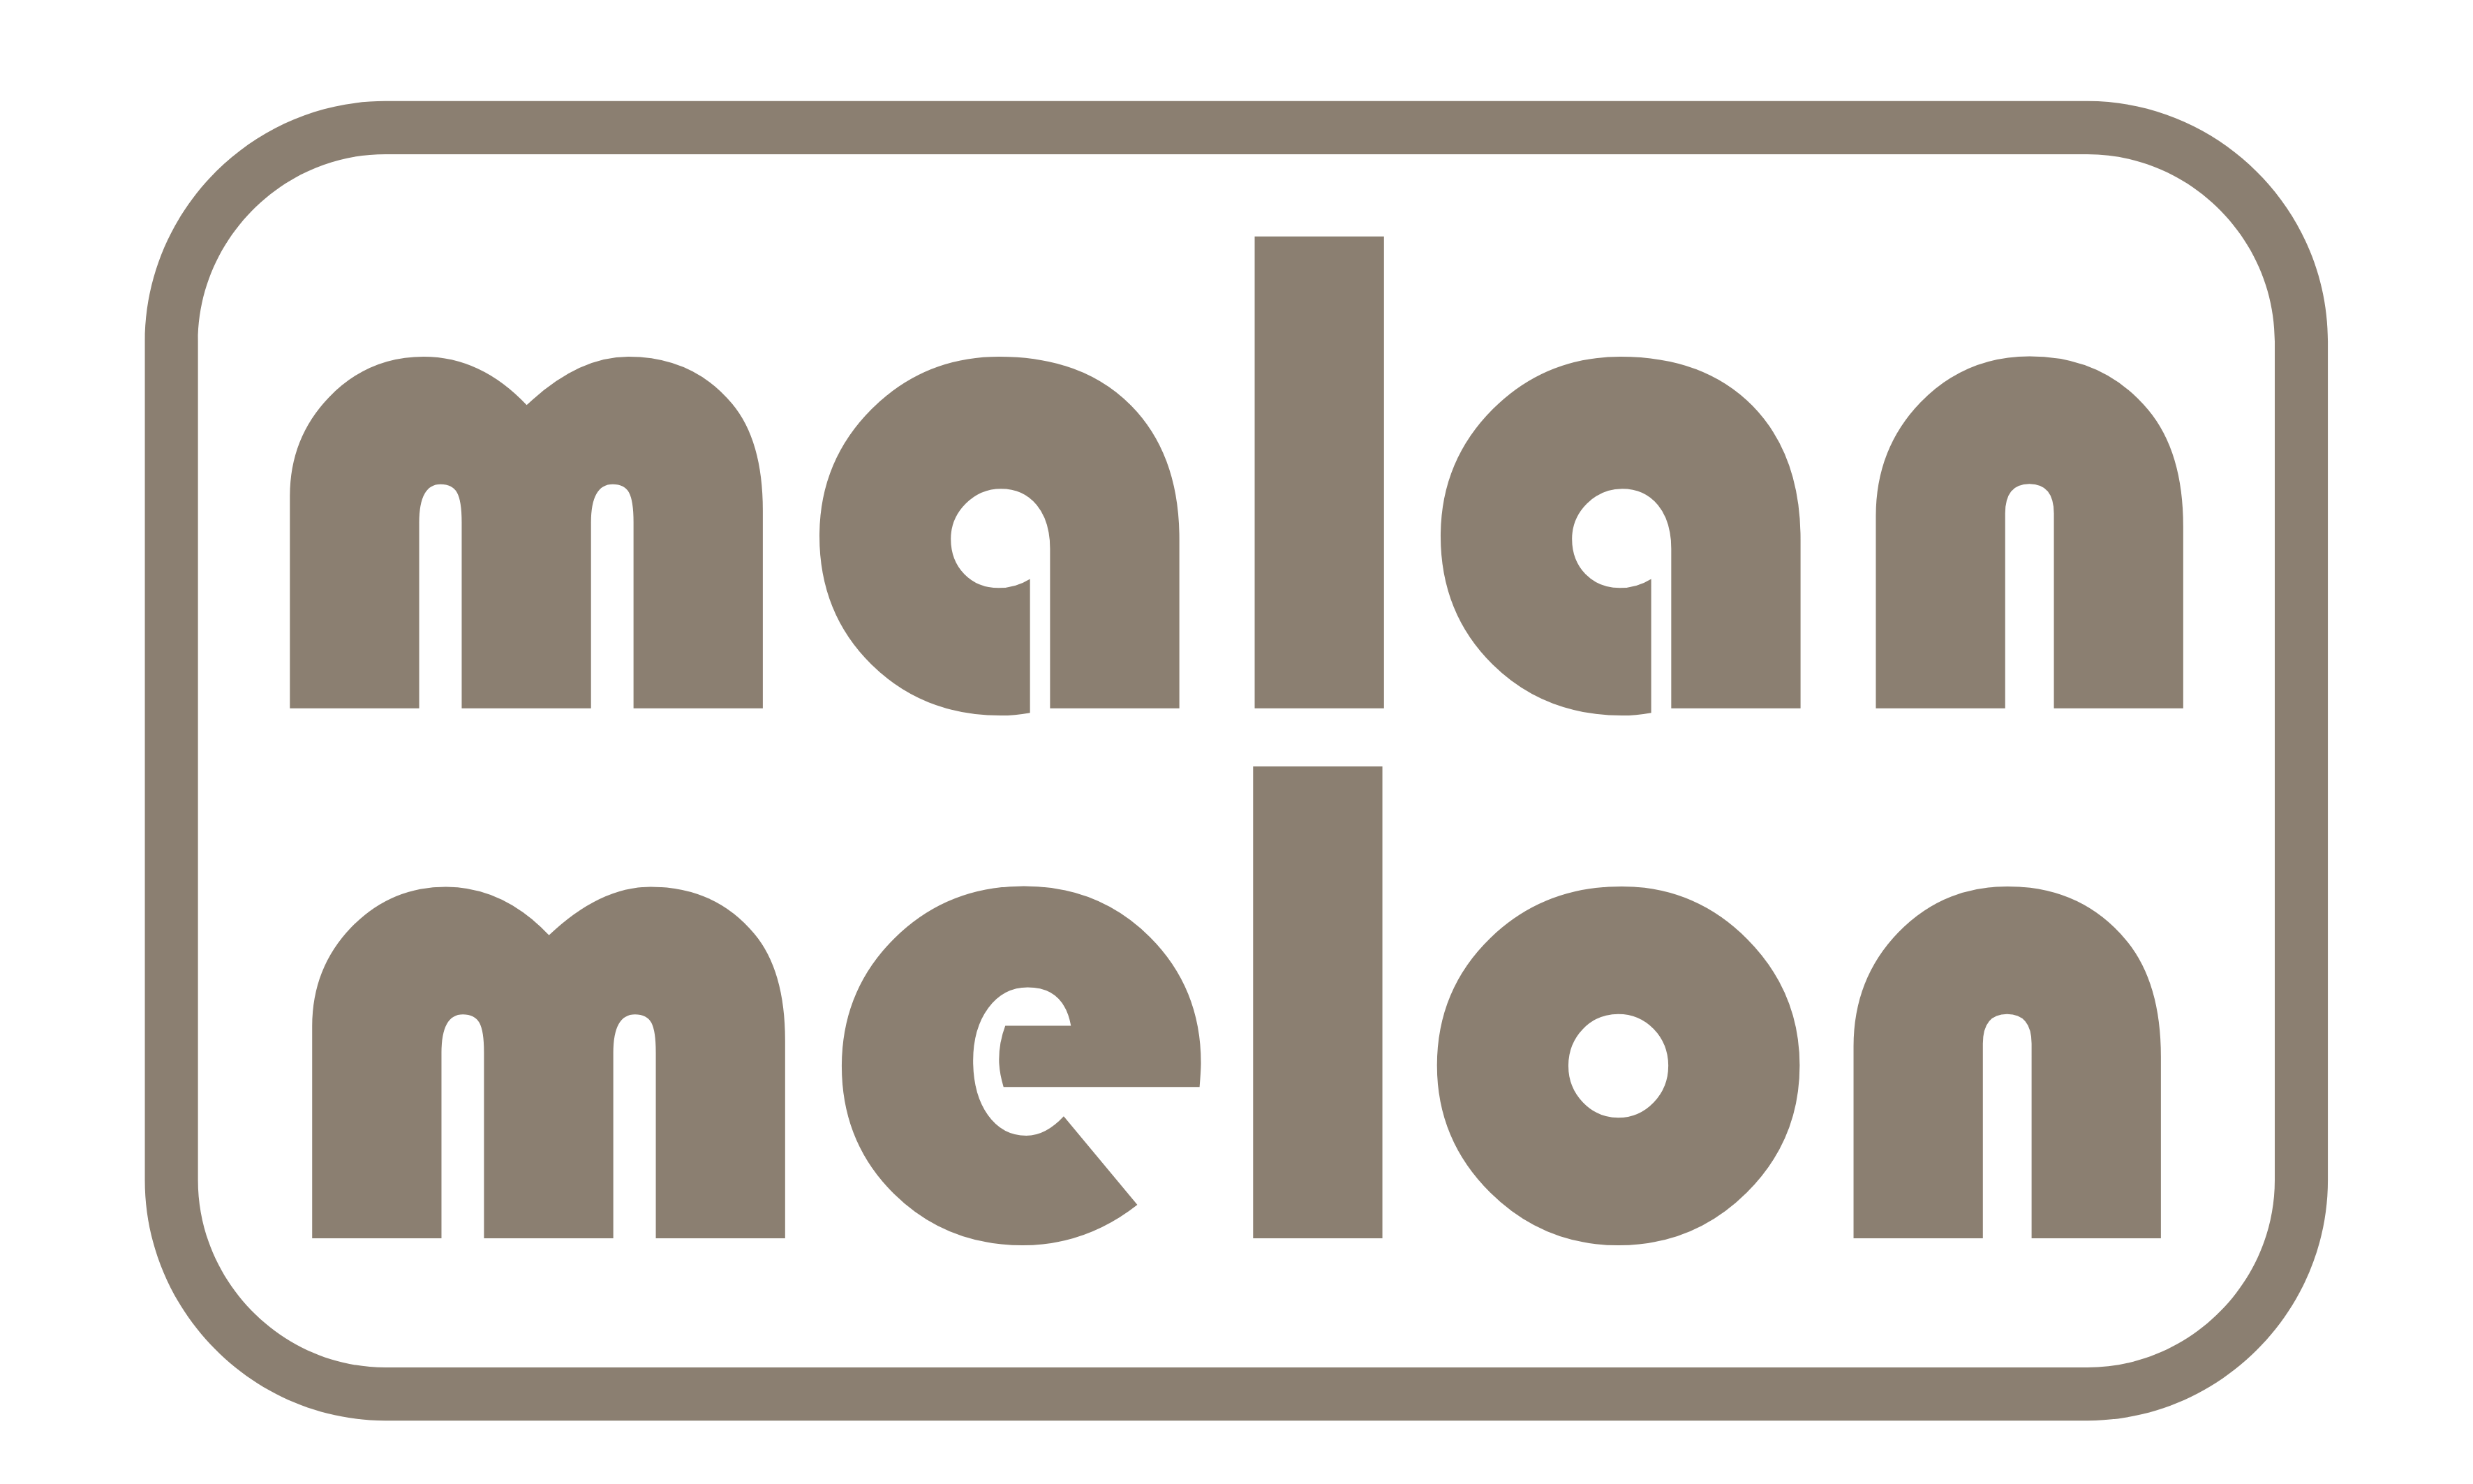 malanmelon - Kids T-Shirt – Organic Cotton – GOAT Slogan – Cerise on Multi-Colours